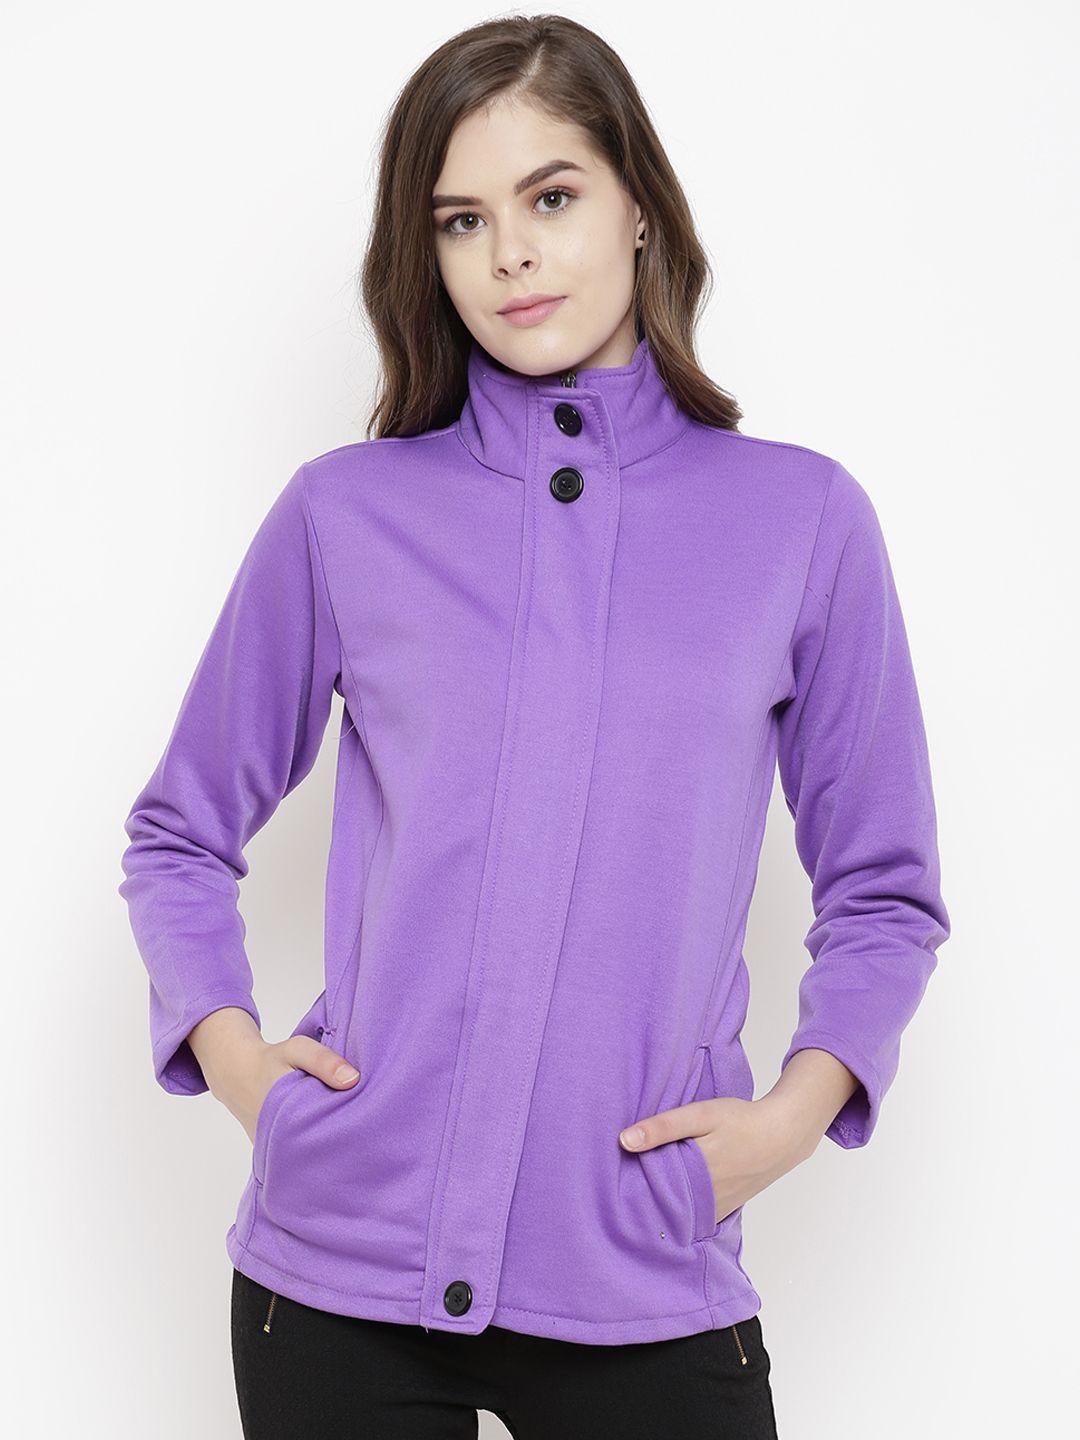 belle-fille-women-purple-solid-tailored-jacket